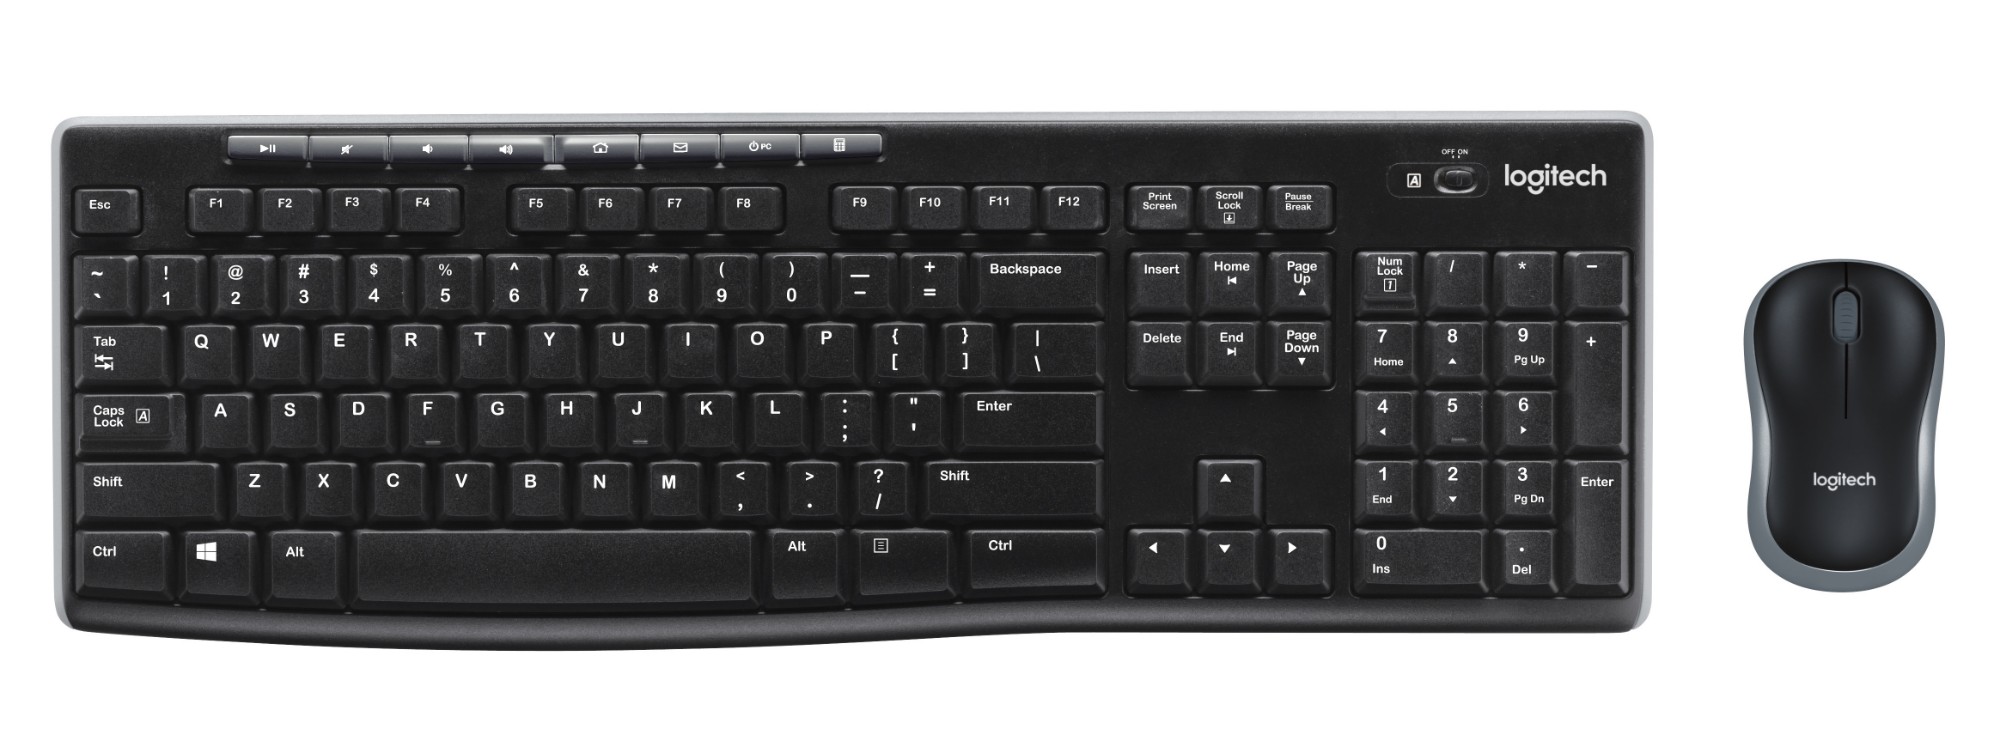 Logitech Keyboard and Mice Sets